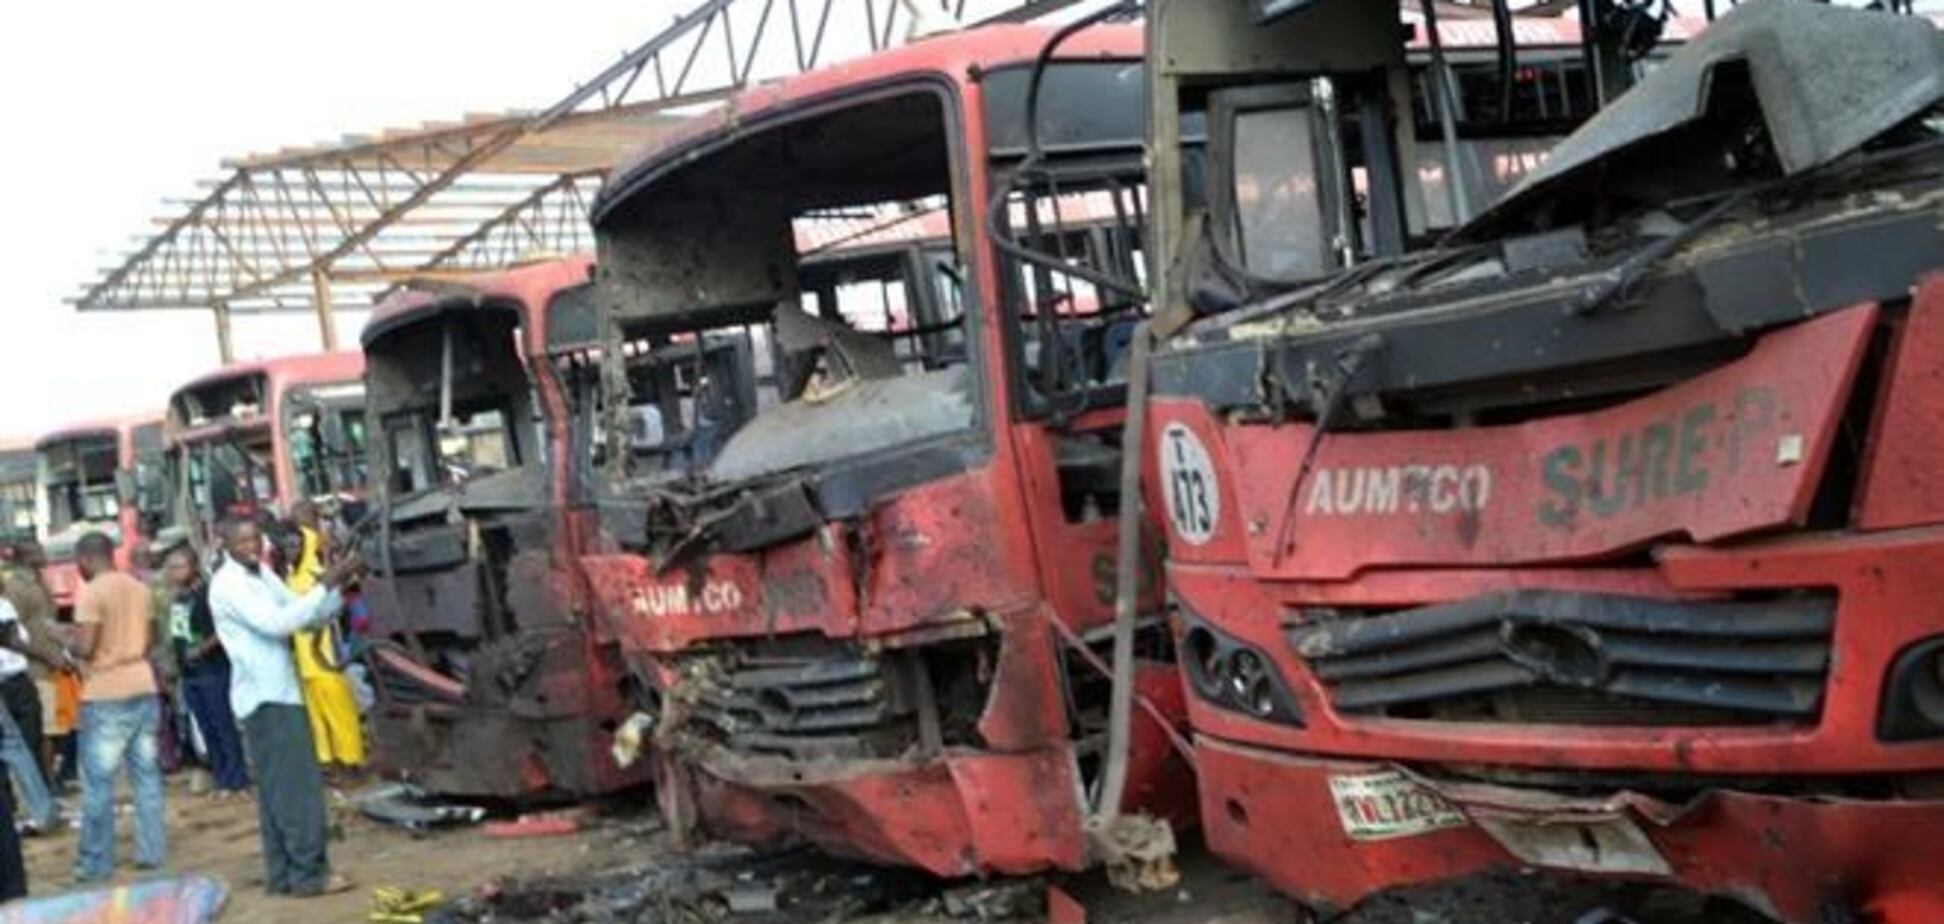 Нигерия: число жертв взрывов возросло до 71